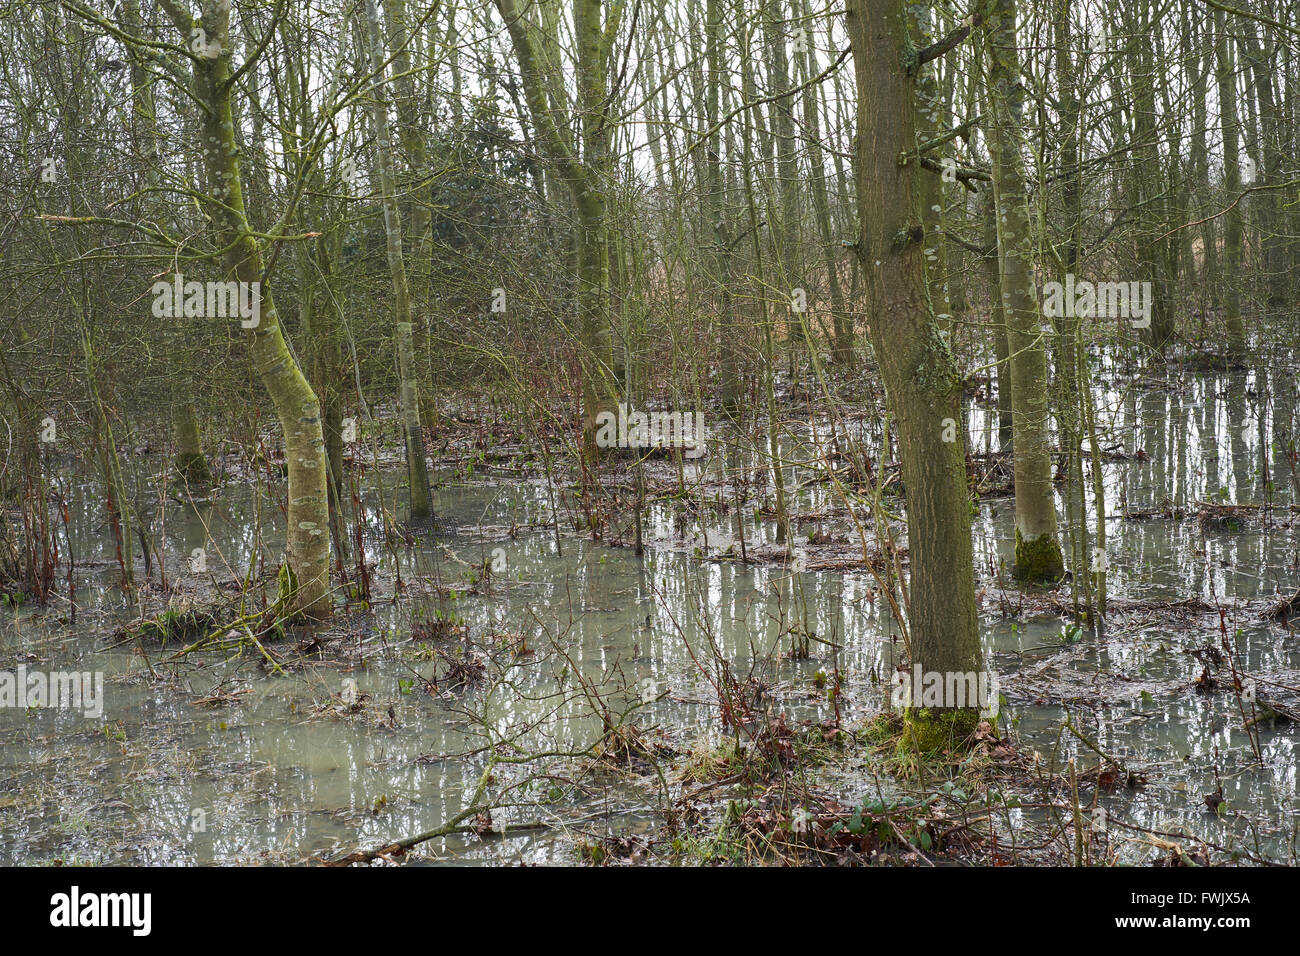 Bäume in einem landwirtschaftlichen Wäldchen von Regenabflüsse aus benachbarten Felder überflutet. Bedfordshire, UK. Stockfoto